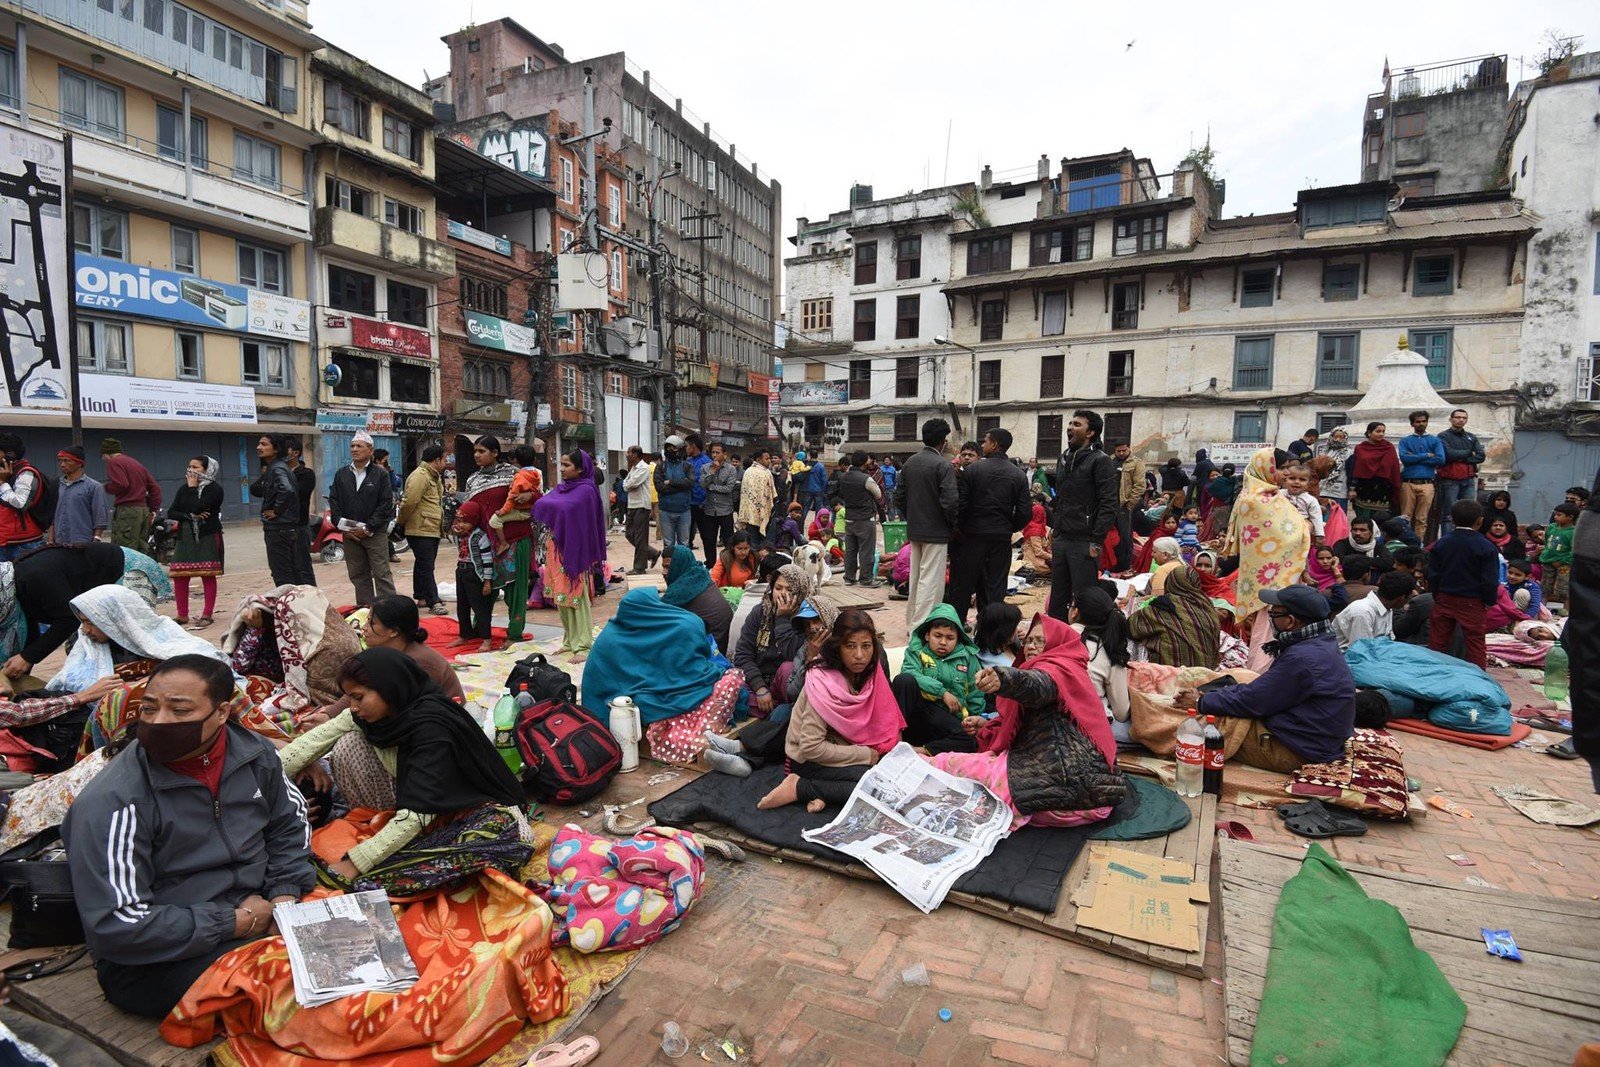 尼泊爾人在地震中痛失家園，280萬人無家可歸，300萬人急需糧食援助。 (攝影: Shristi Rajbhandari)